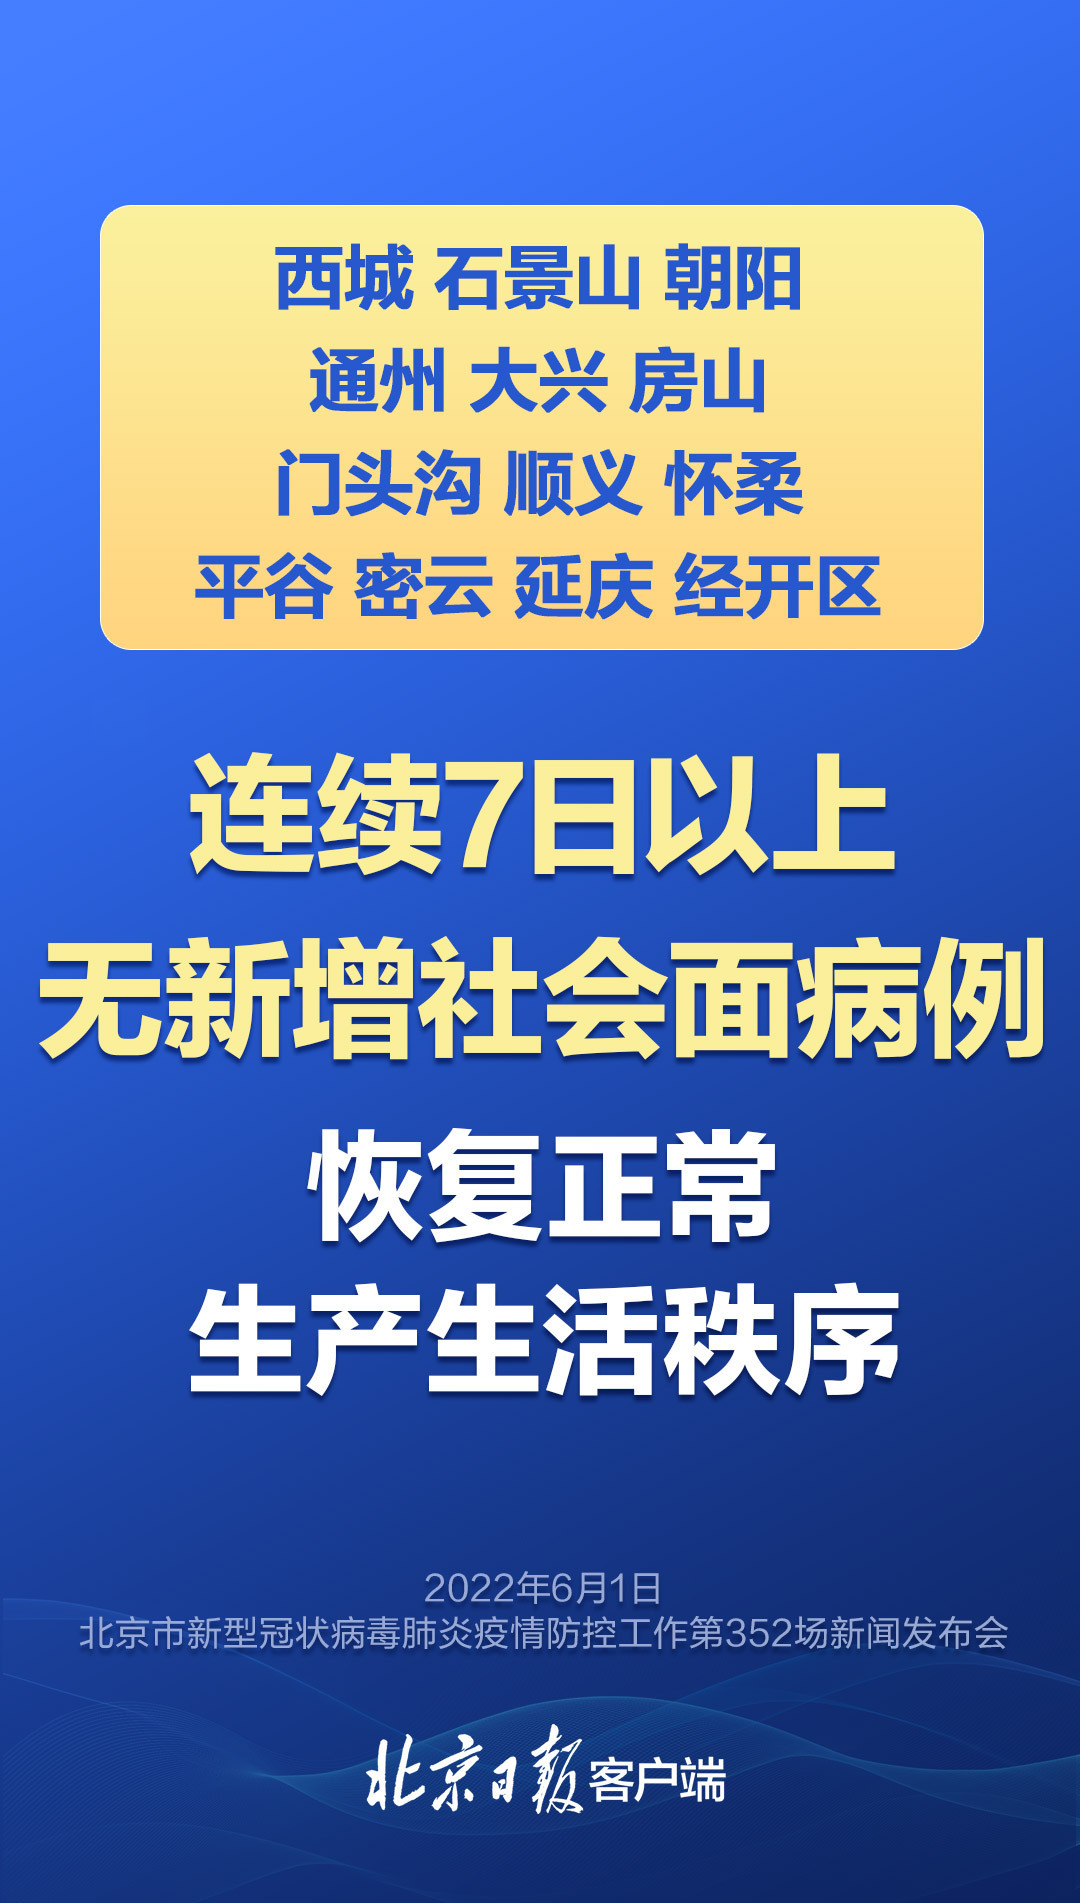 海报|北京13区恢复正常生产生活秩序！发布会有这些重点